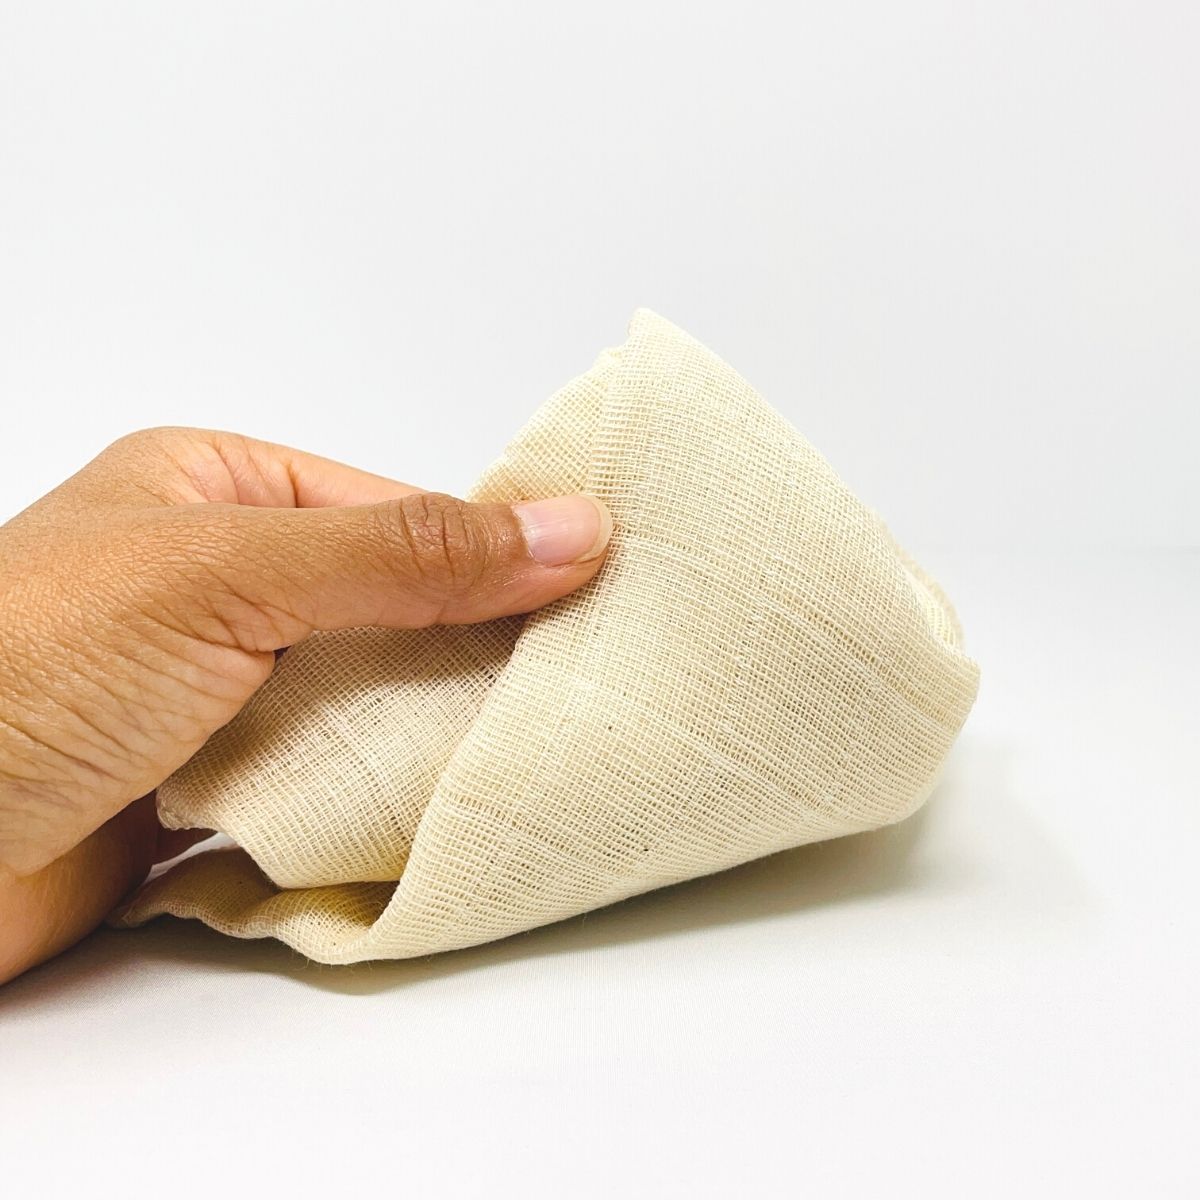 muslin cloth for face